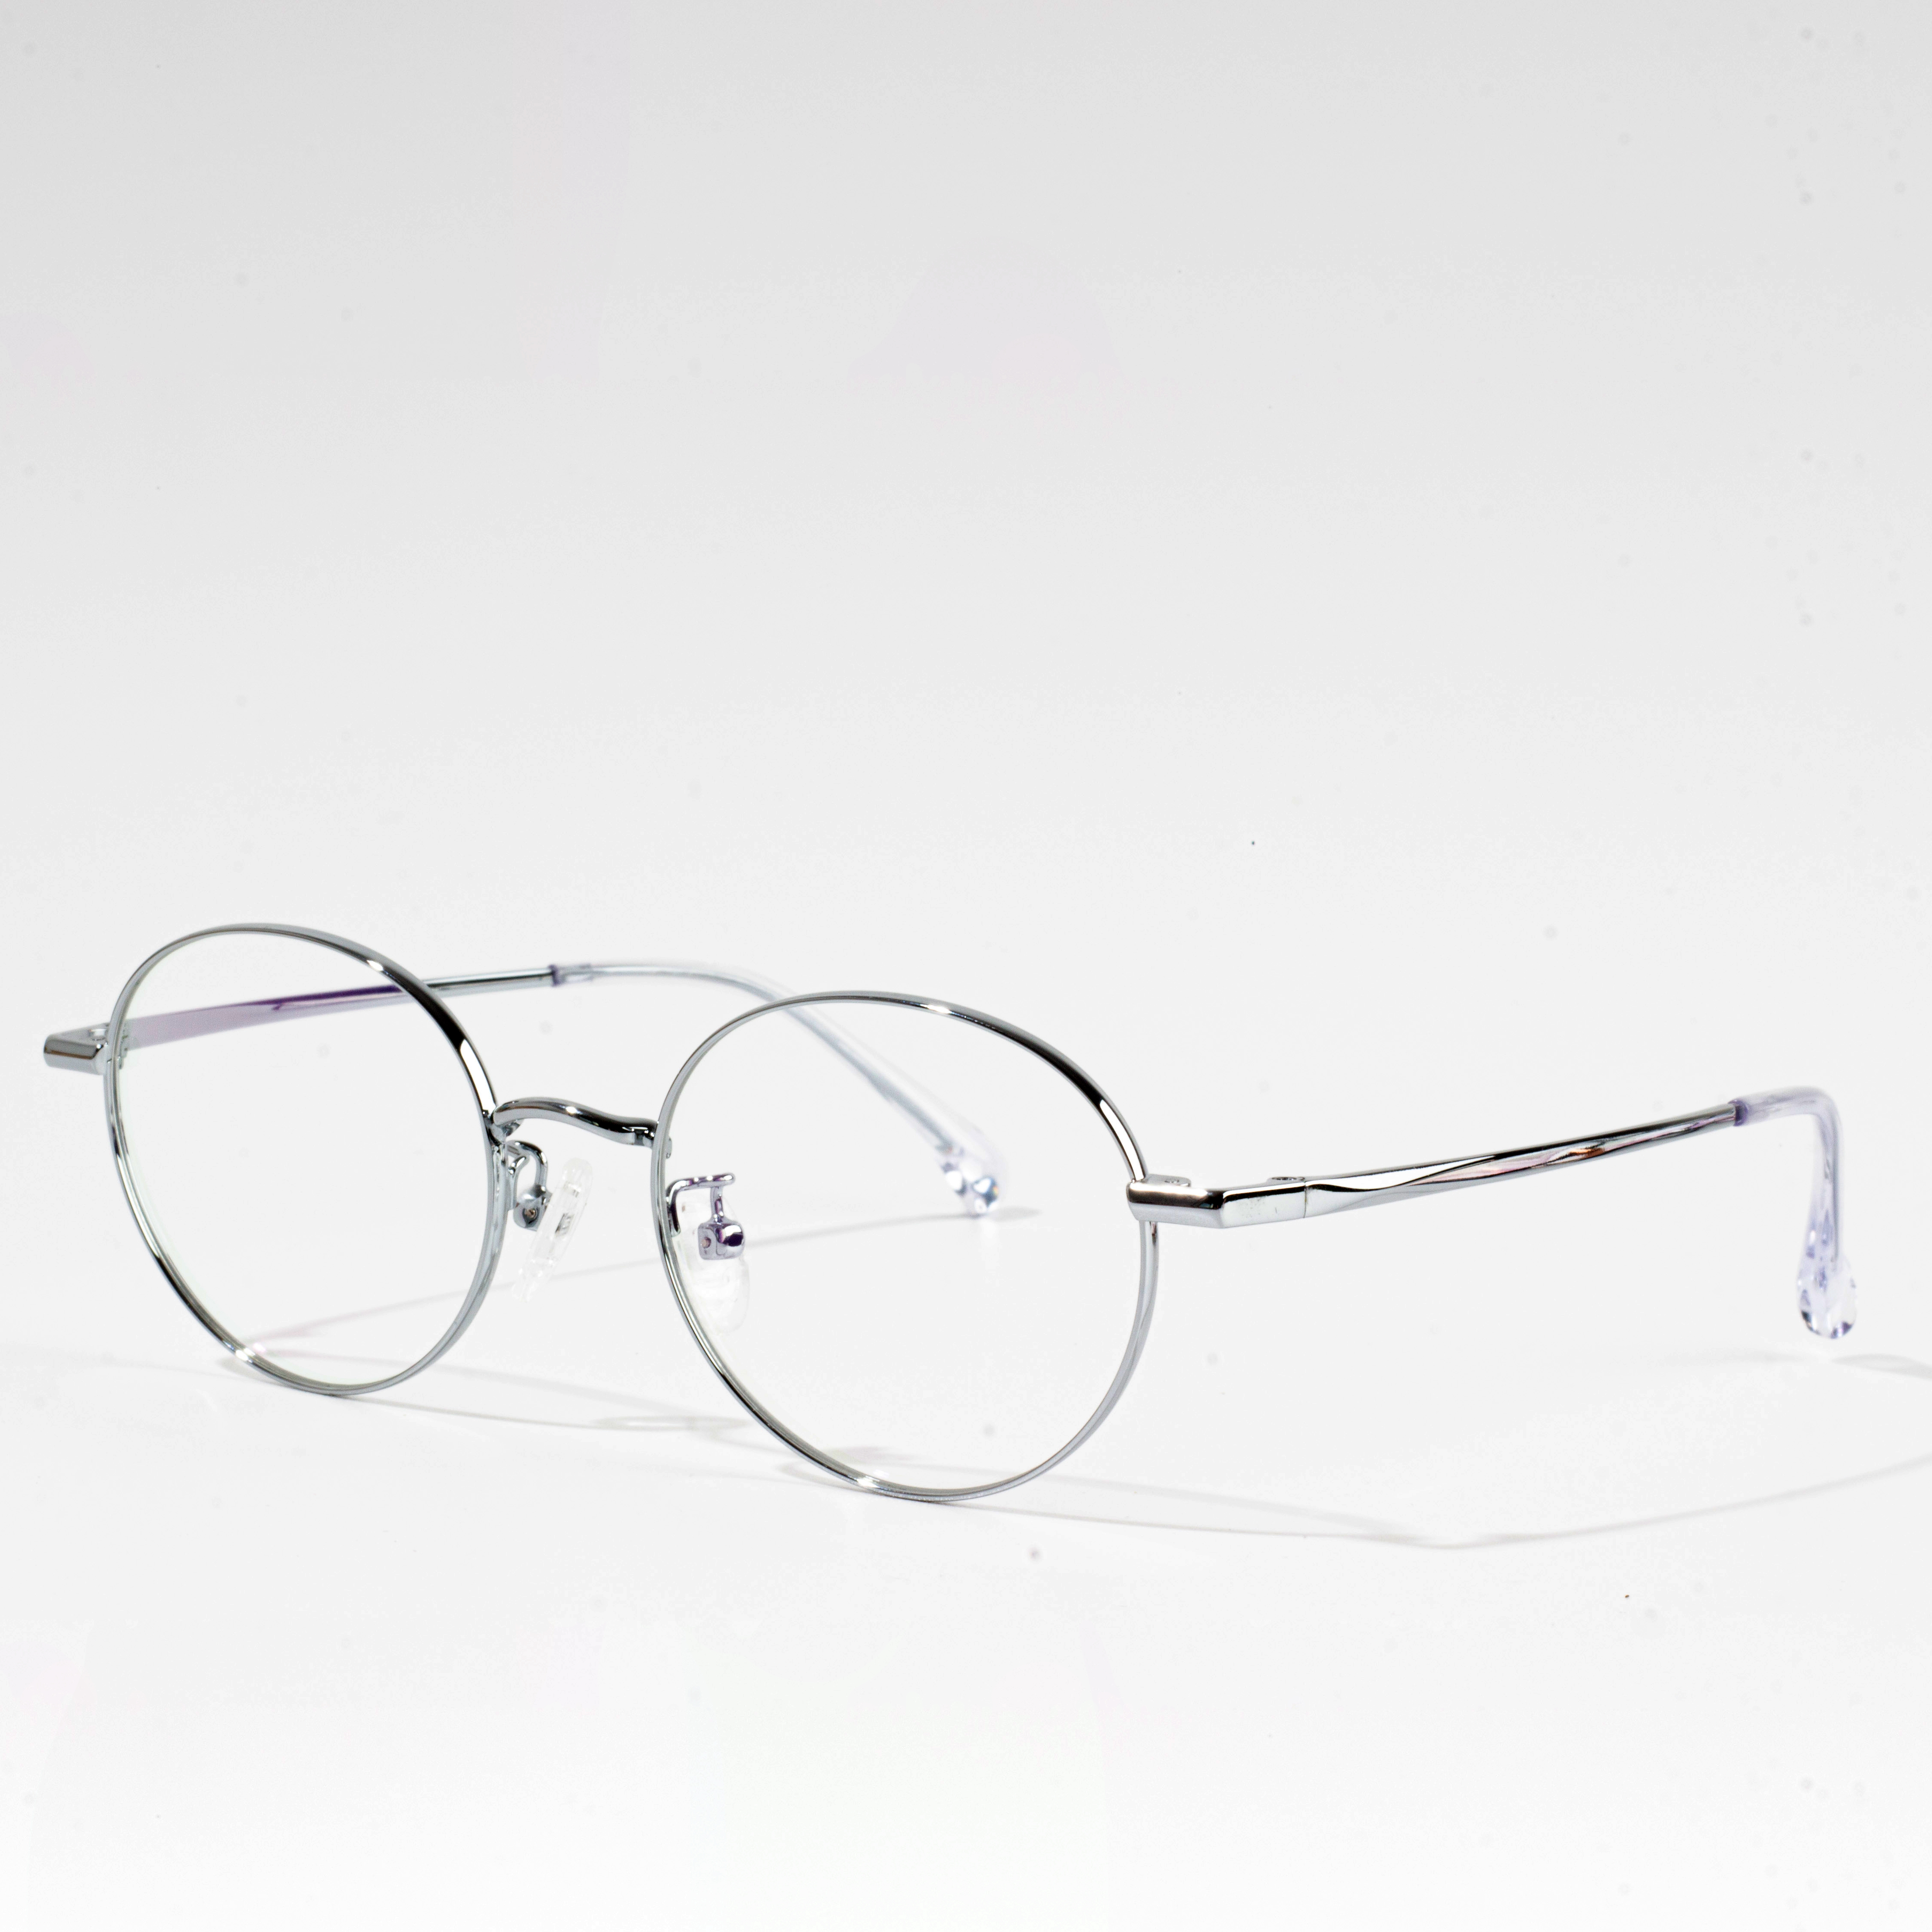 metaliniai akinių rėmeliai